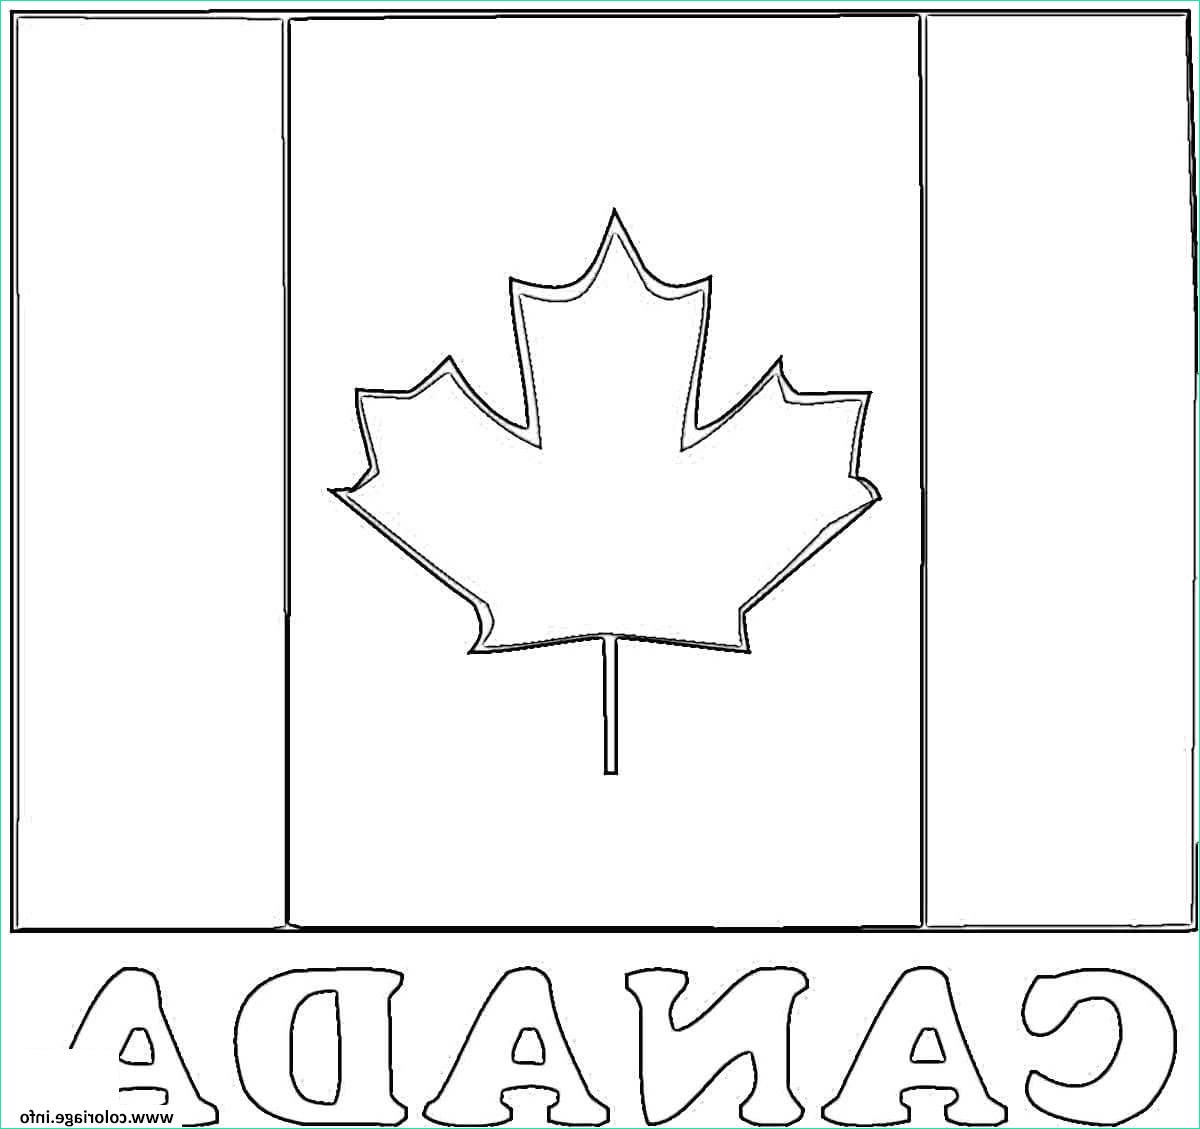 fete nationale drapeau du canada flag coloriage